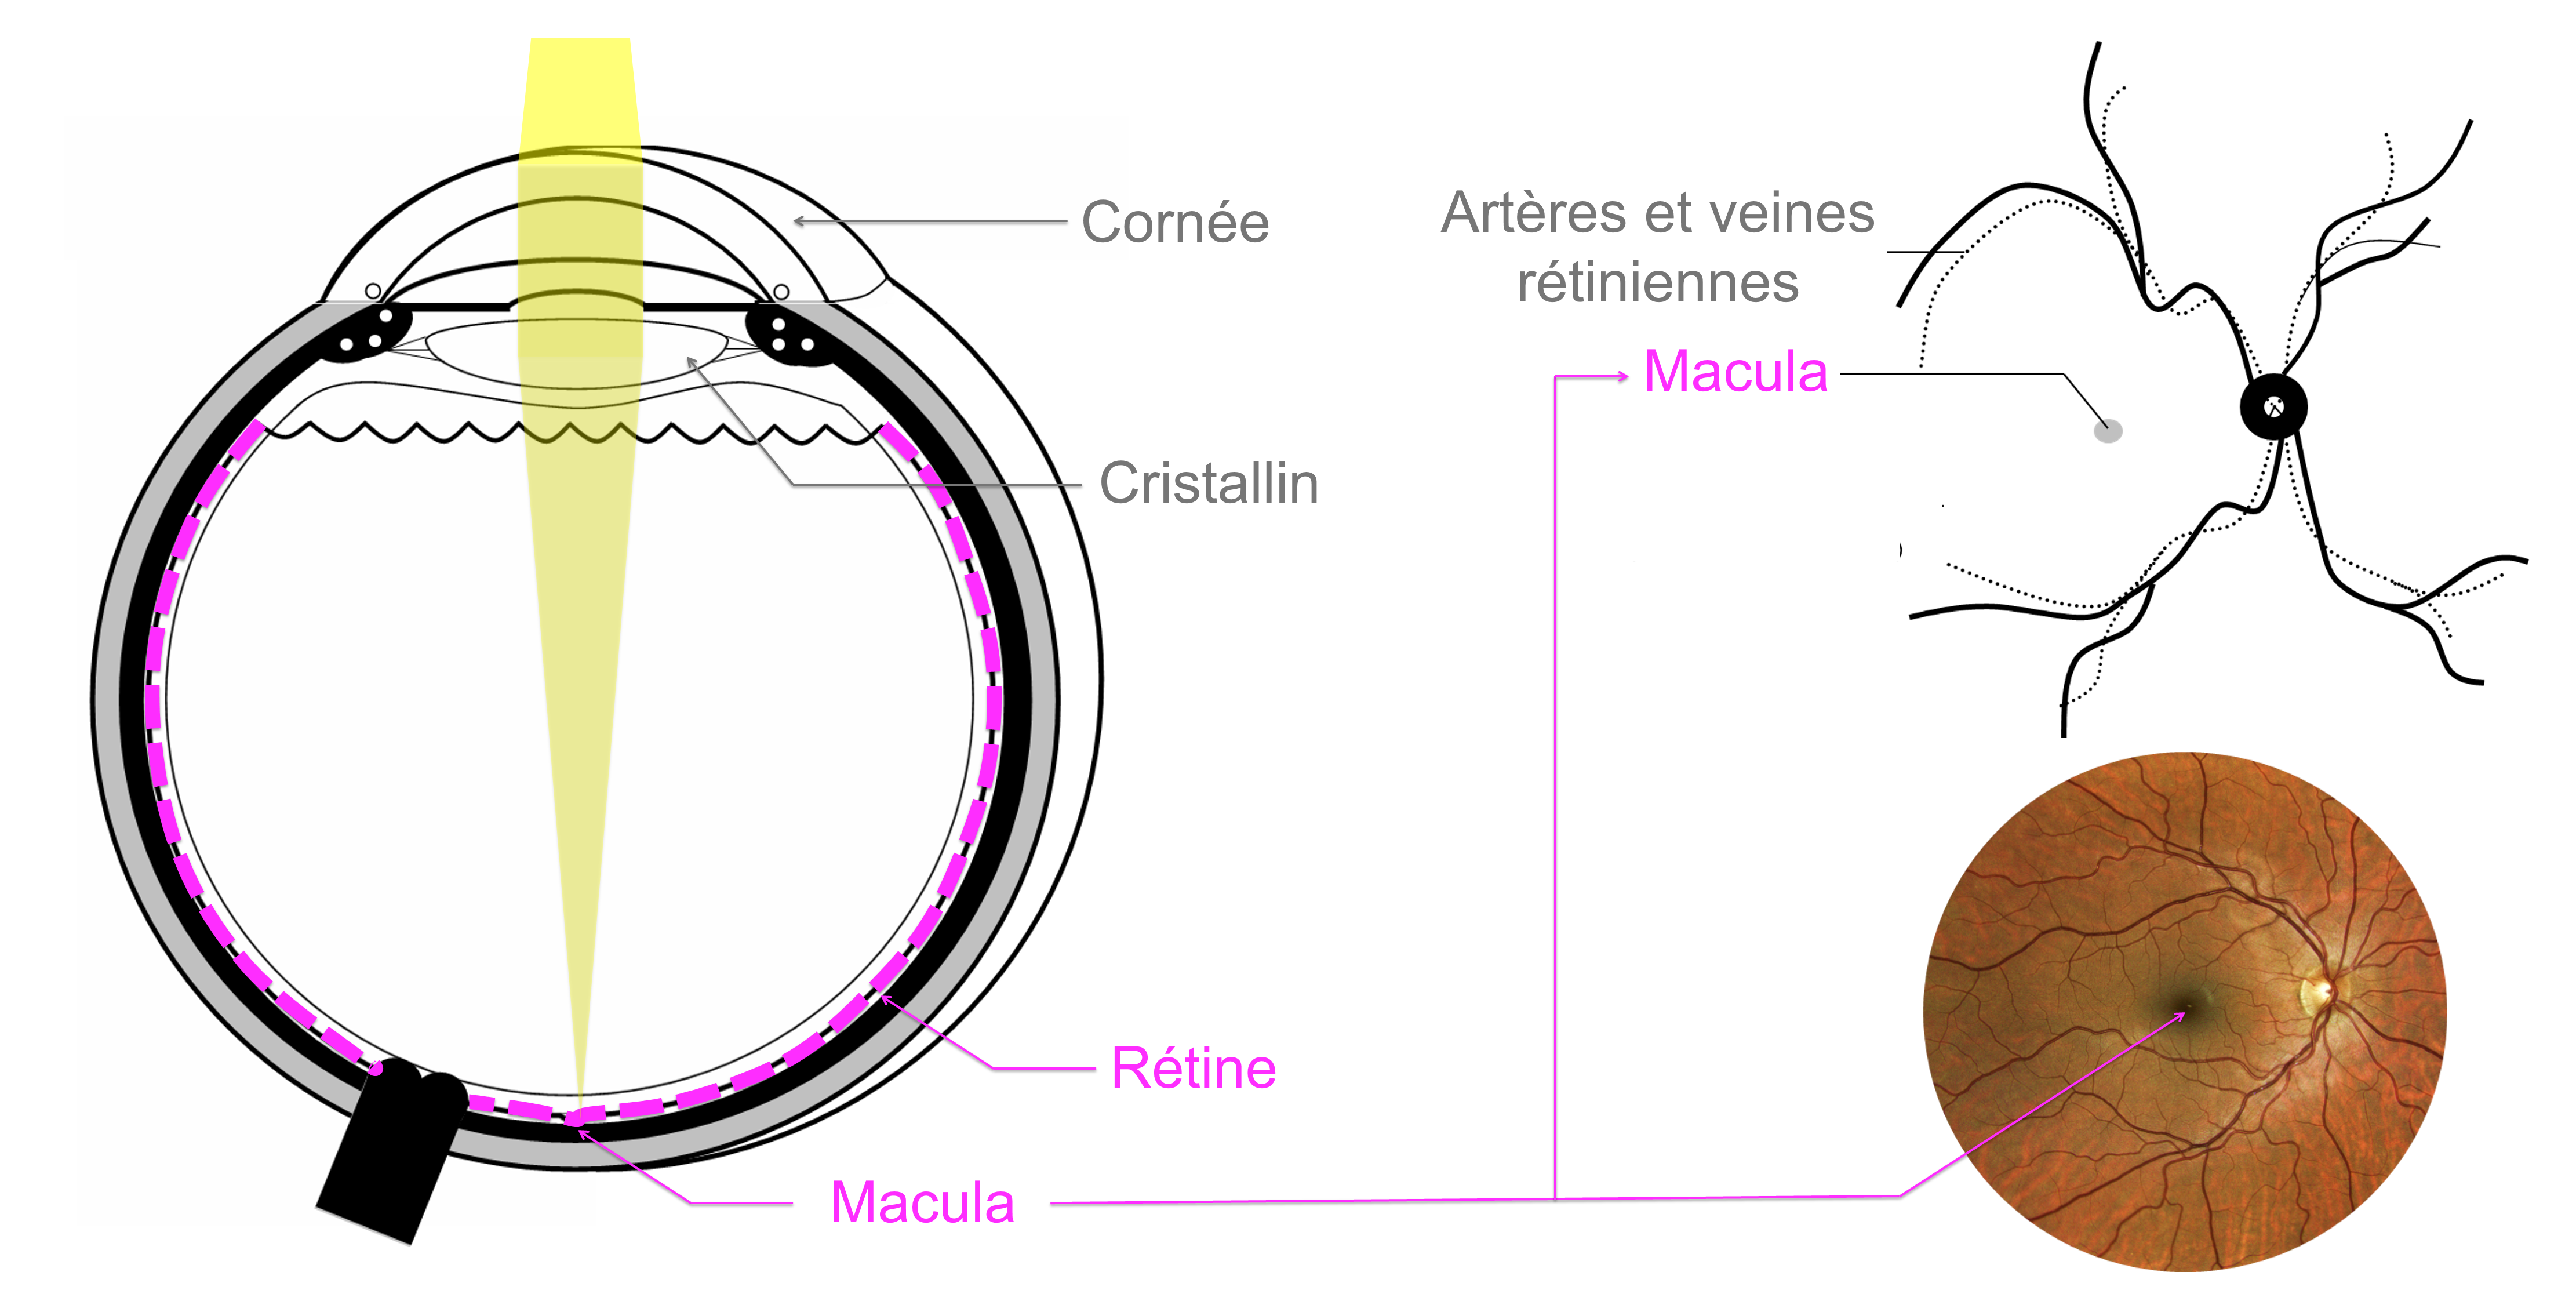 la macula correspond à la zone centrale de la rétine